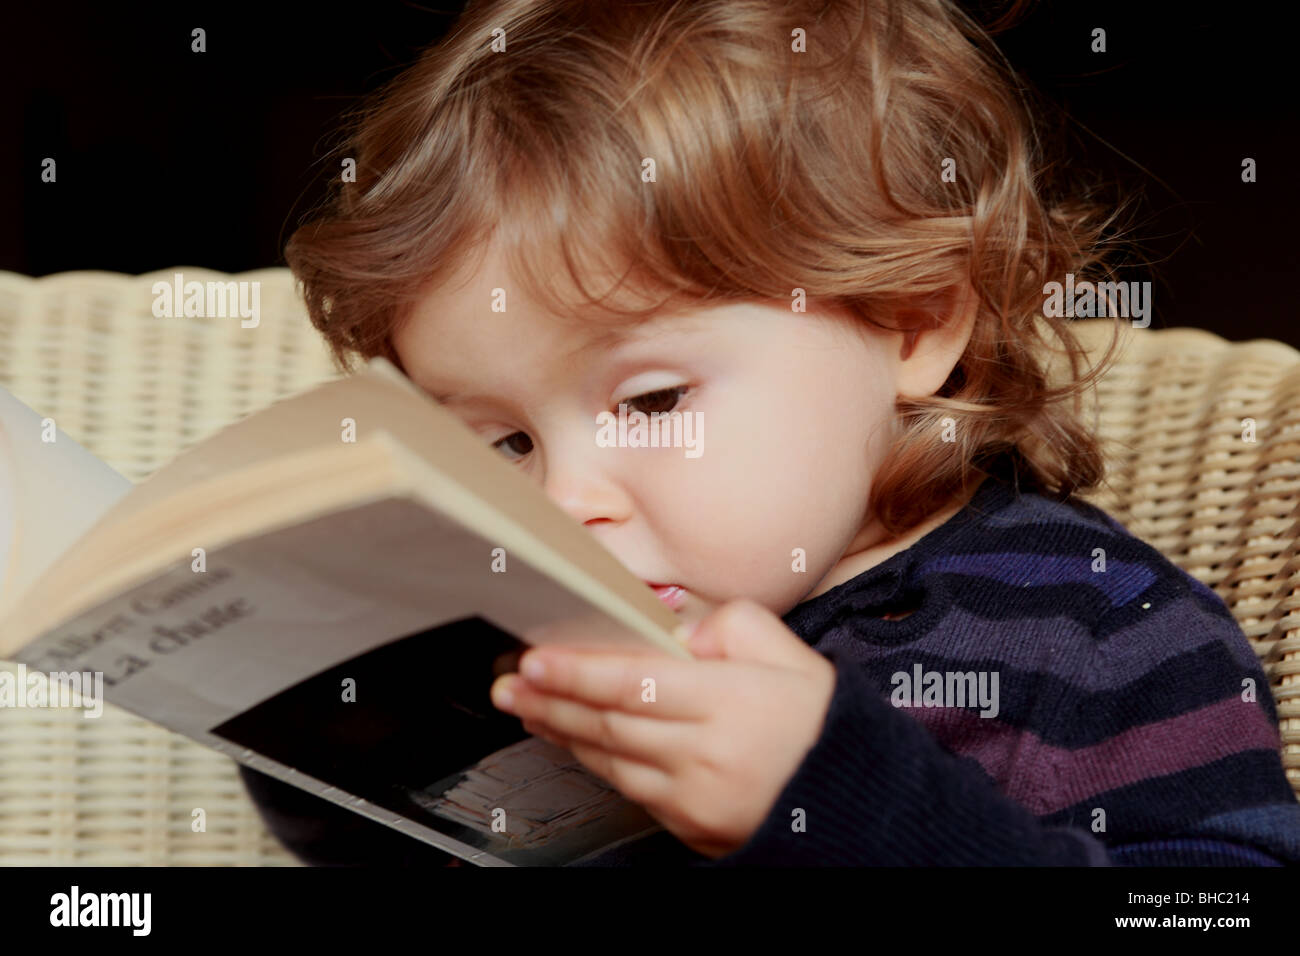 A venti mesi Baby girl nel senso che essa legge per reale di un libro del filosofo francese Albert Camus Foto Stock